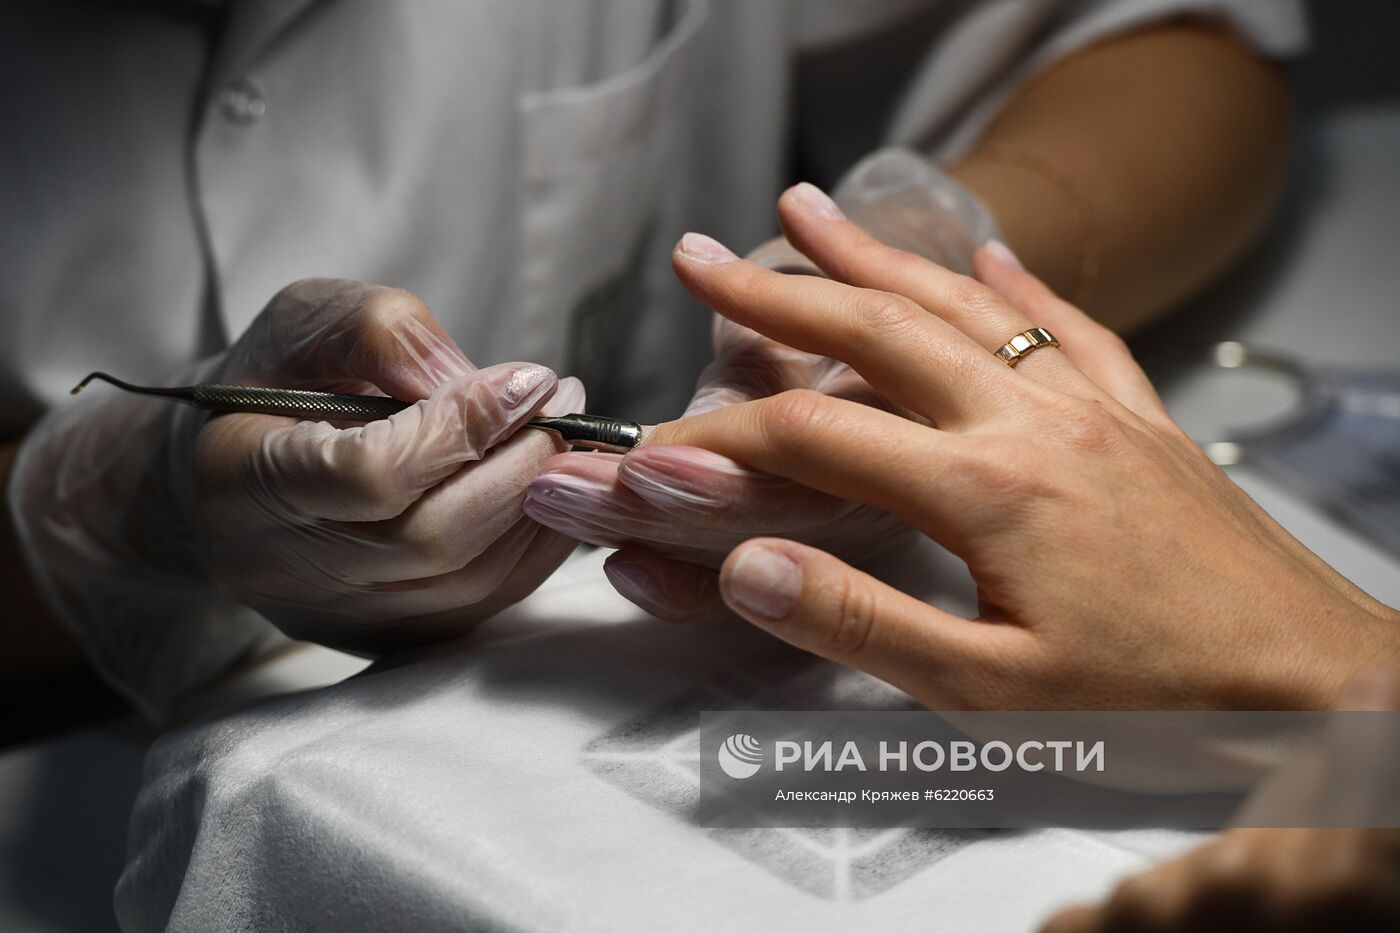 В Новосибирской области открылись салоны красоты и автомастерские